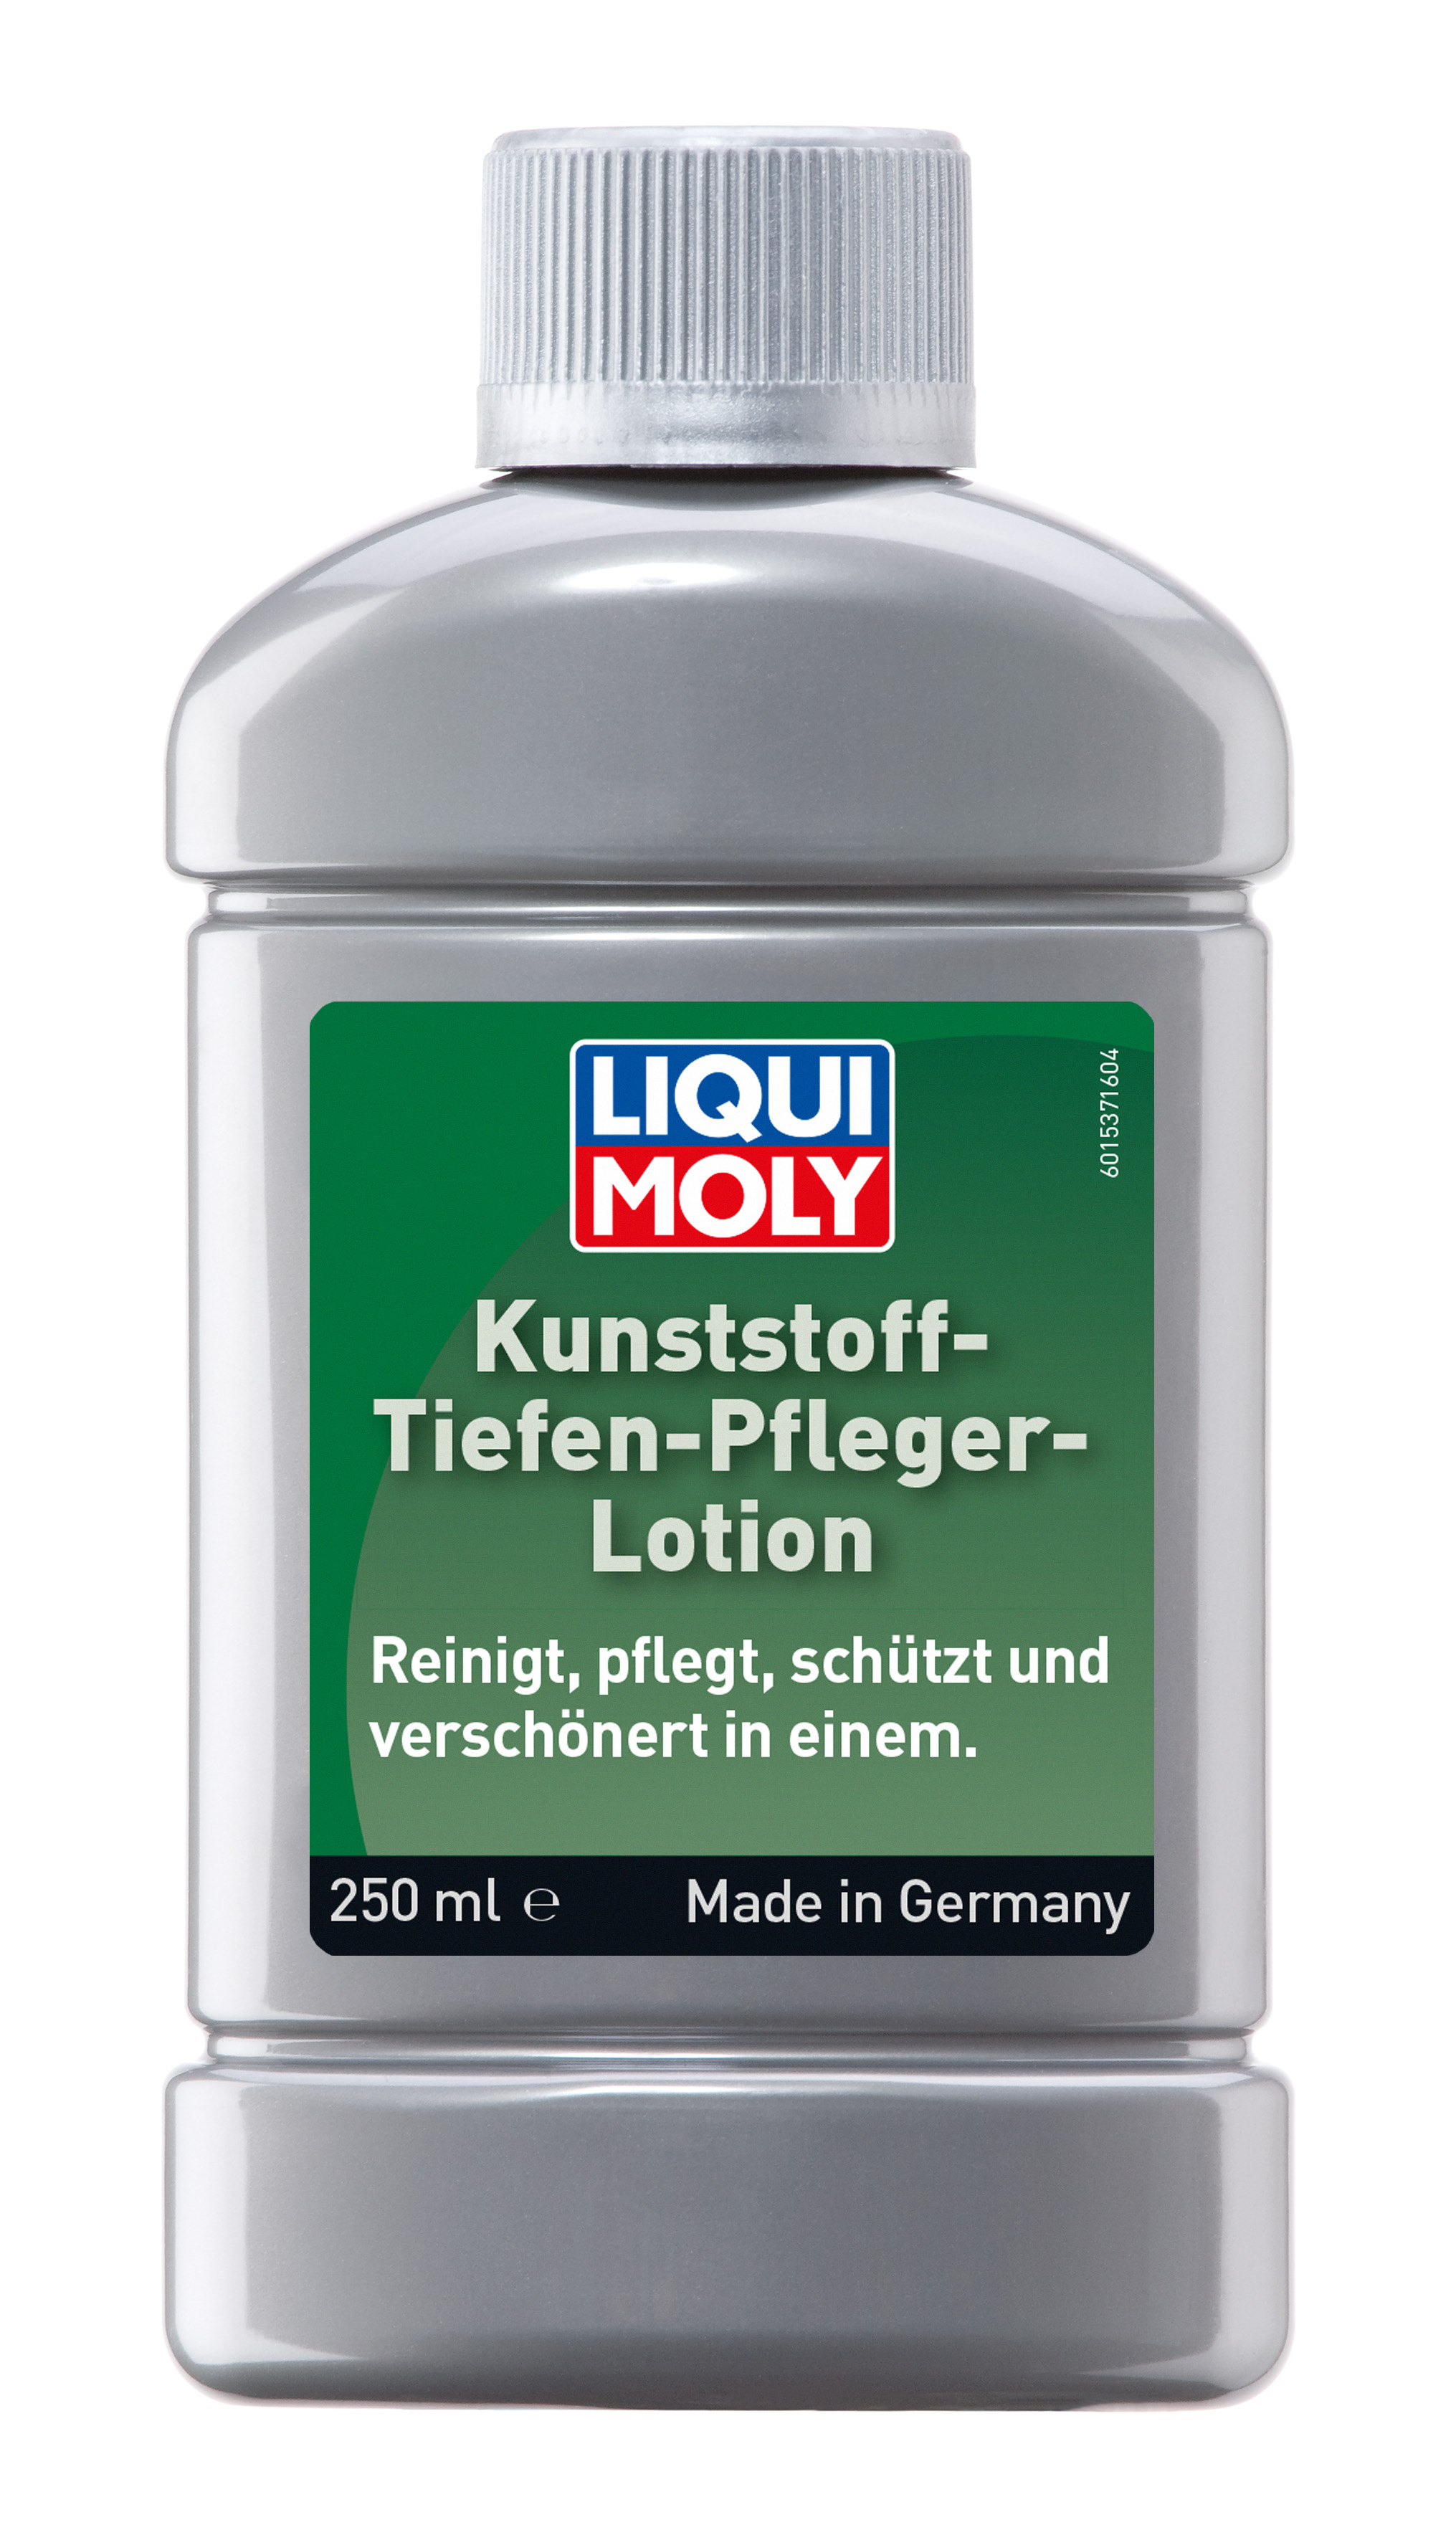 Лосьон для ухода за пластиком Kunststoff-Tiefen-Pfleger-Lotion, 250мл - Liqui Moly 1537